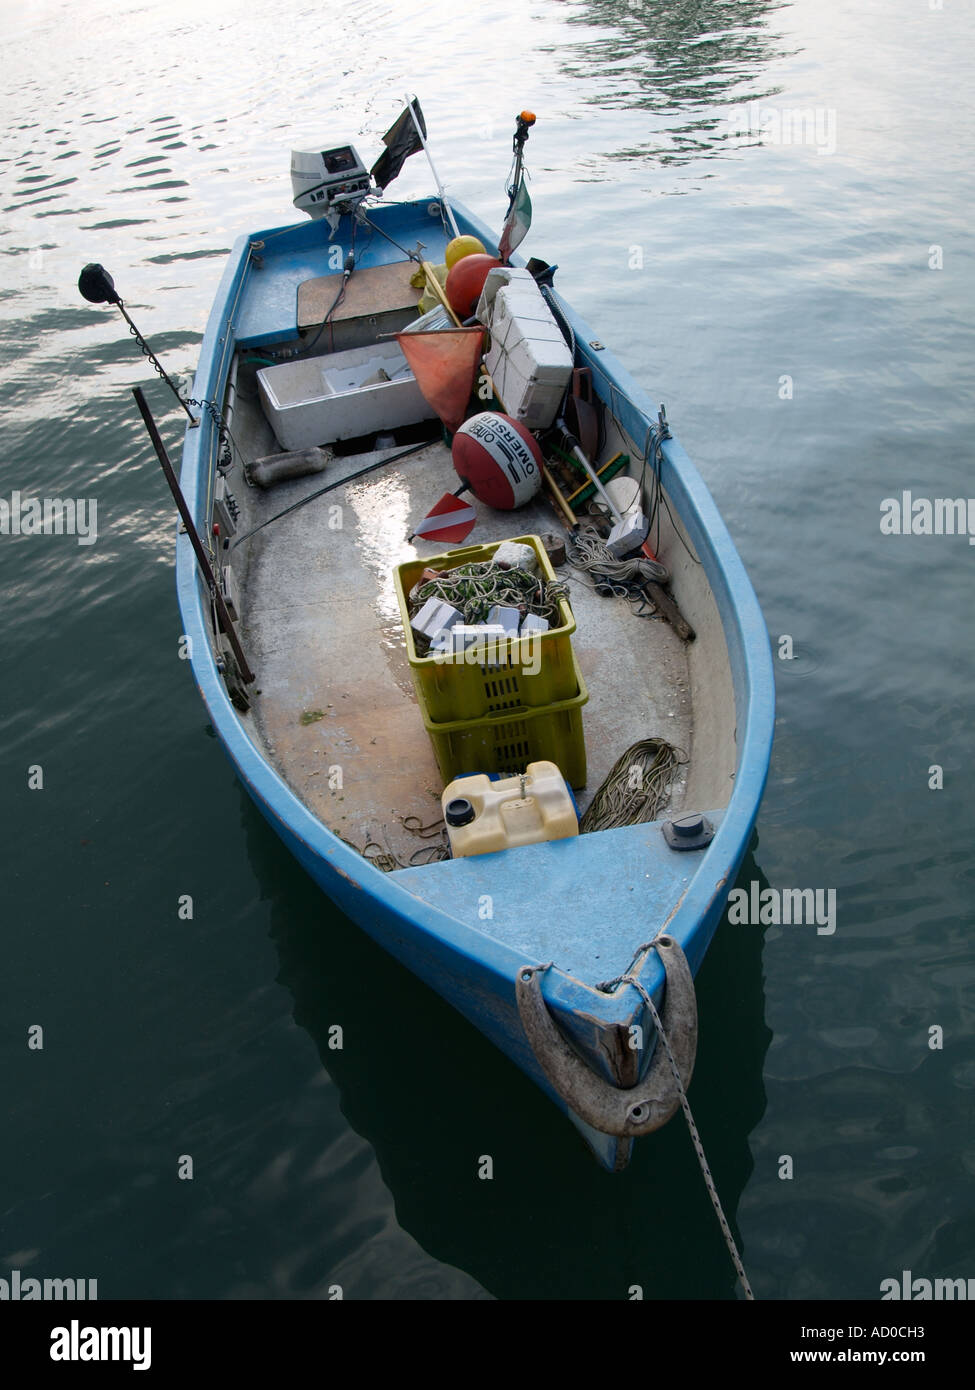 Embarcación tradicional de pesca con artes de pesca boyas redes de luz que se utiliza en el lago de Garda, Italia Foto de stock